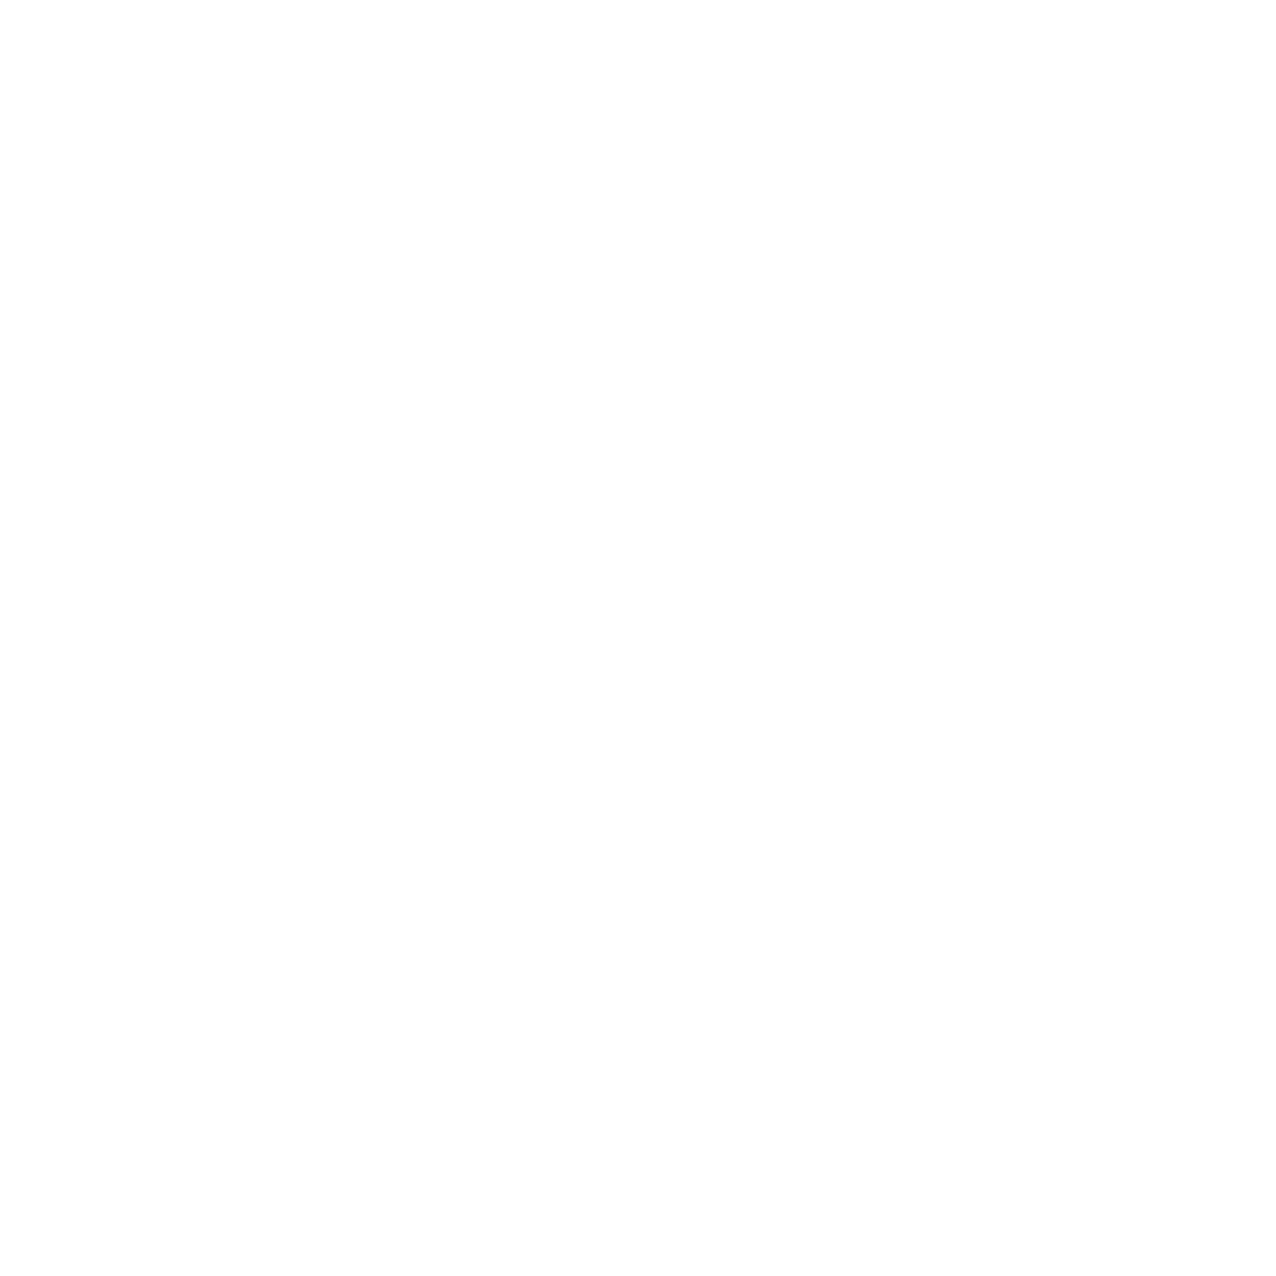 Karve Media